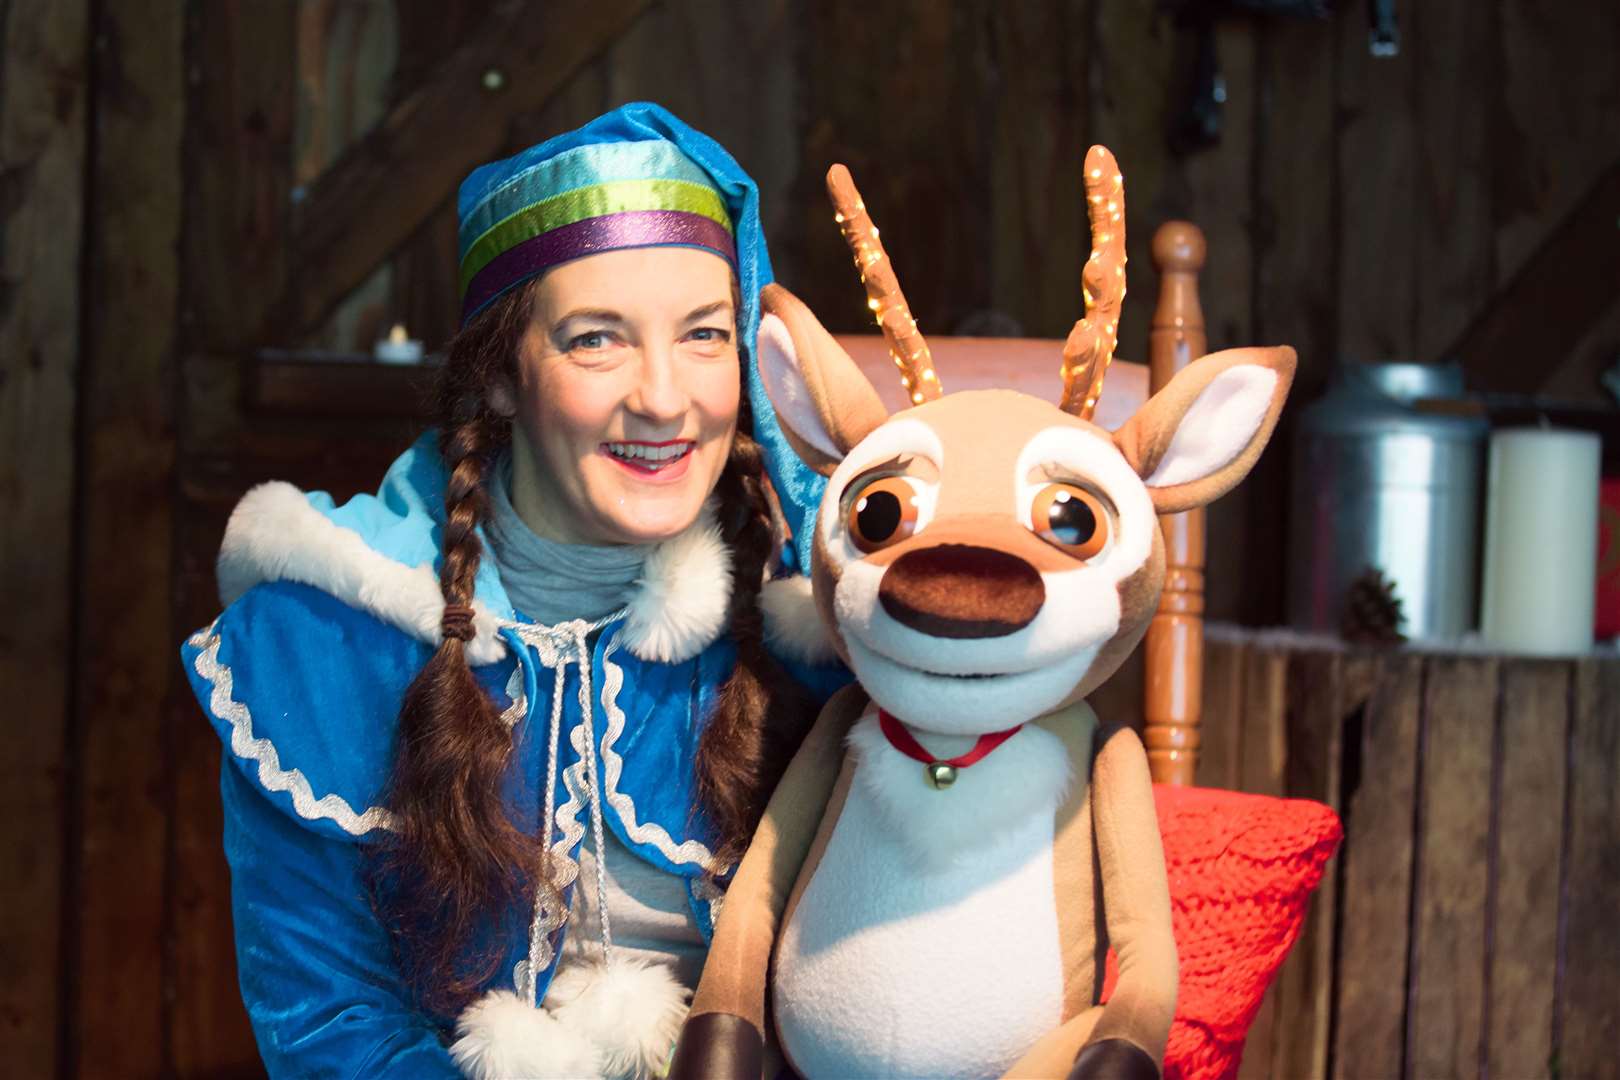 Children will get to meet Norbert, the reindeer at Buewater's Believe event